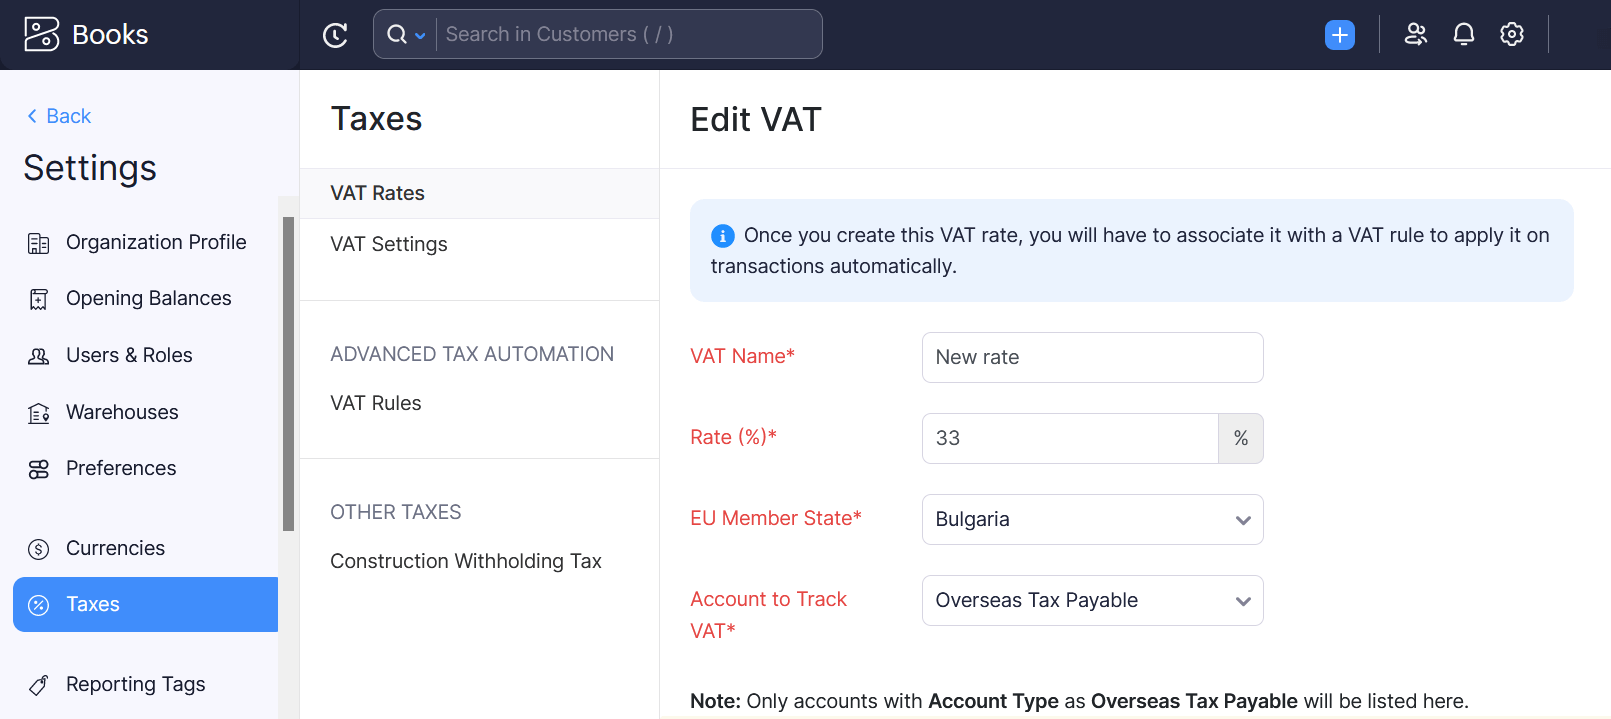 Edit VAT Rate